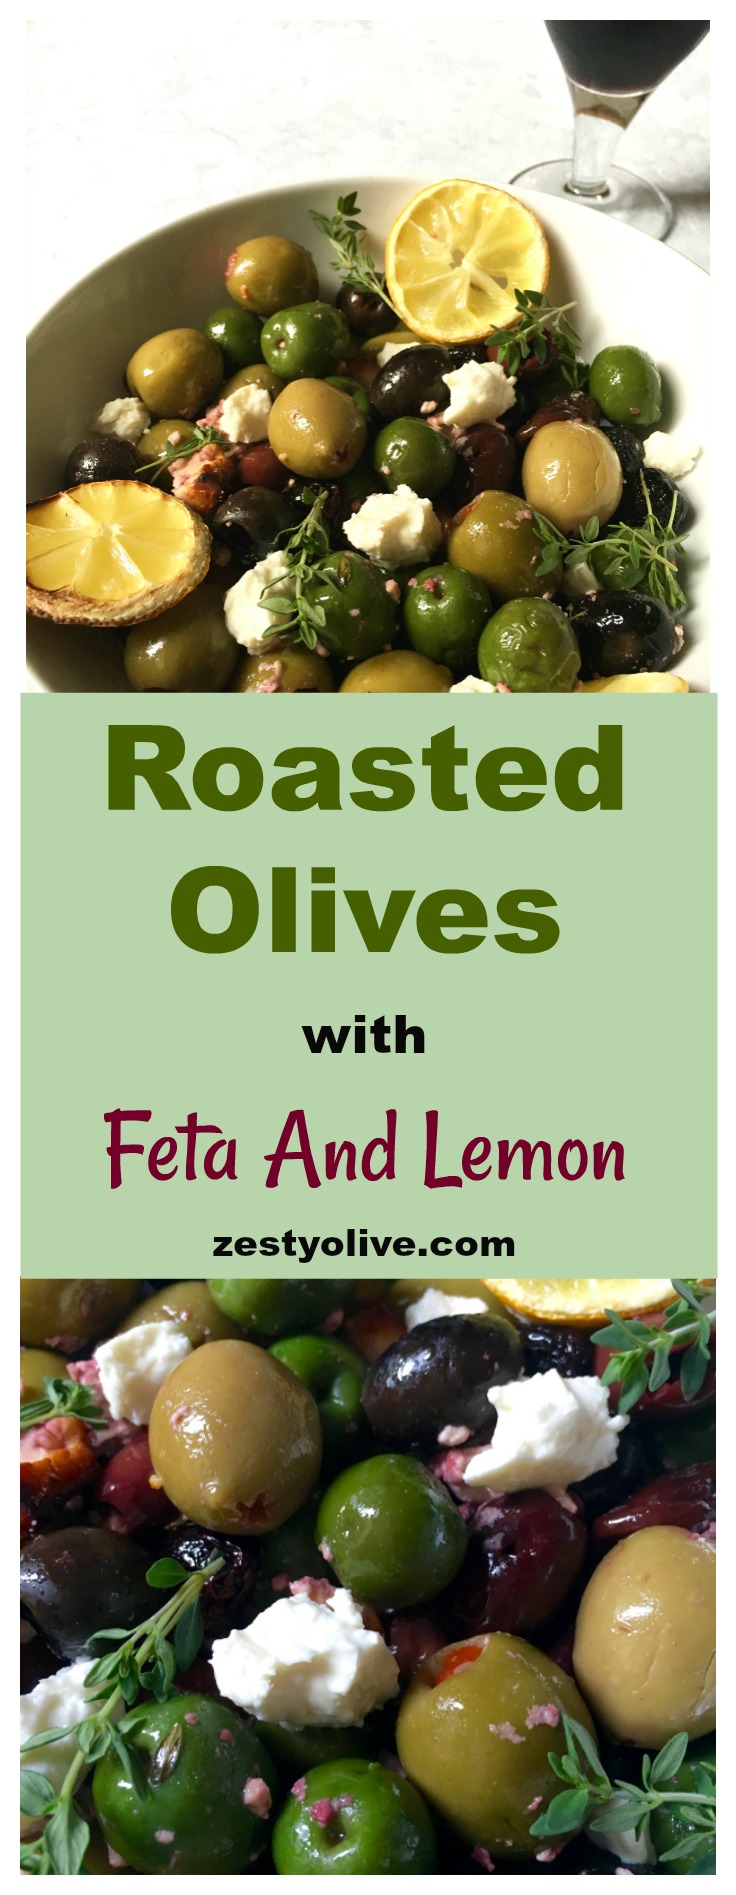 Roasted Olives with Feta and Lemon